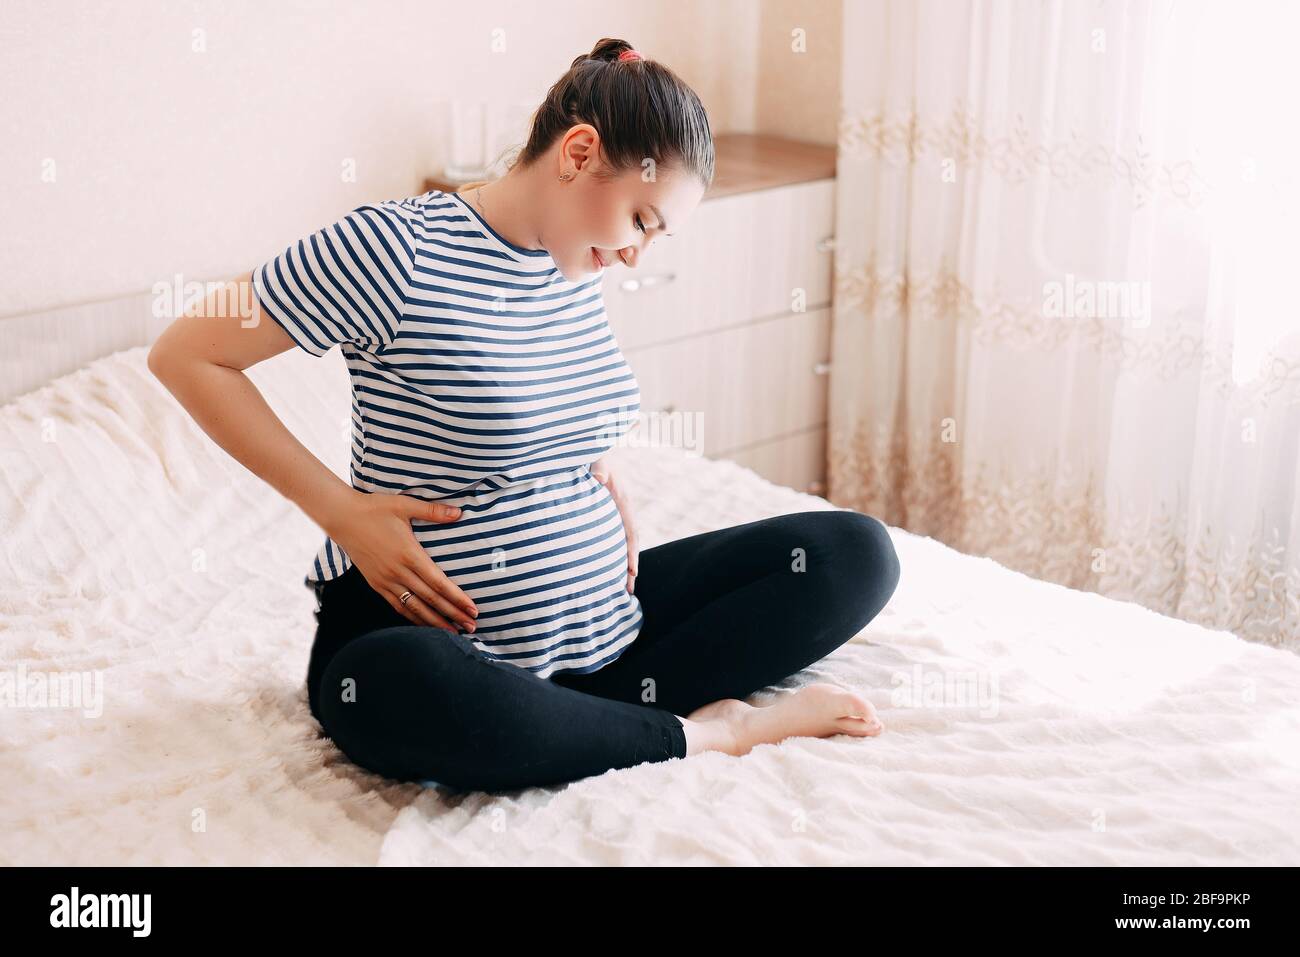 Schwangerschaft, Rest, Menschen und Erwartung Konzept - glückliche schwangere Frau am Bett sitzen und berührte ihren Bauch zu Hause Stockfoto